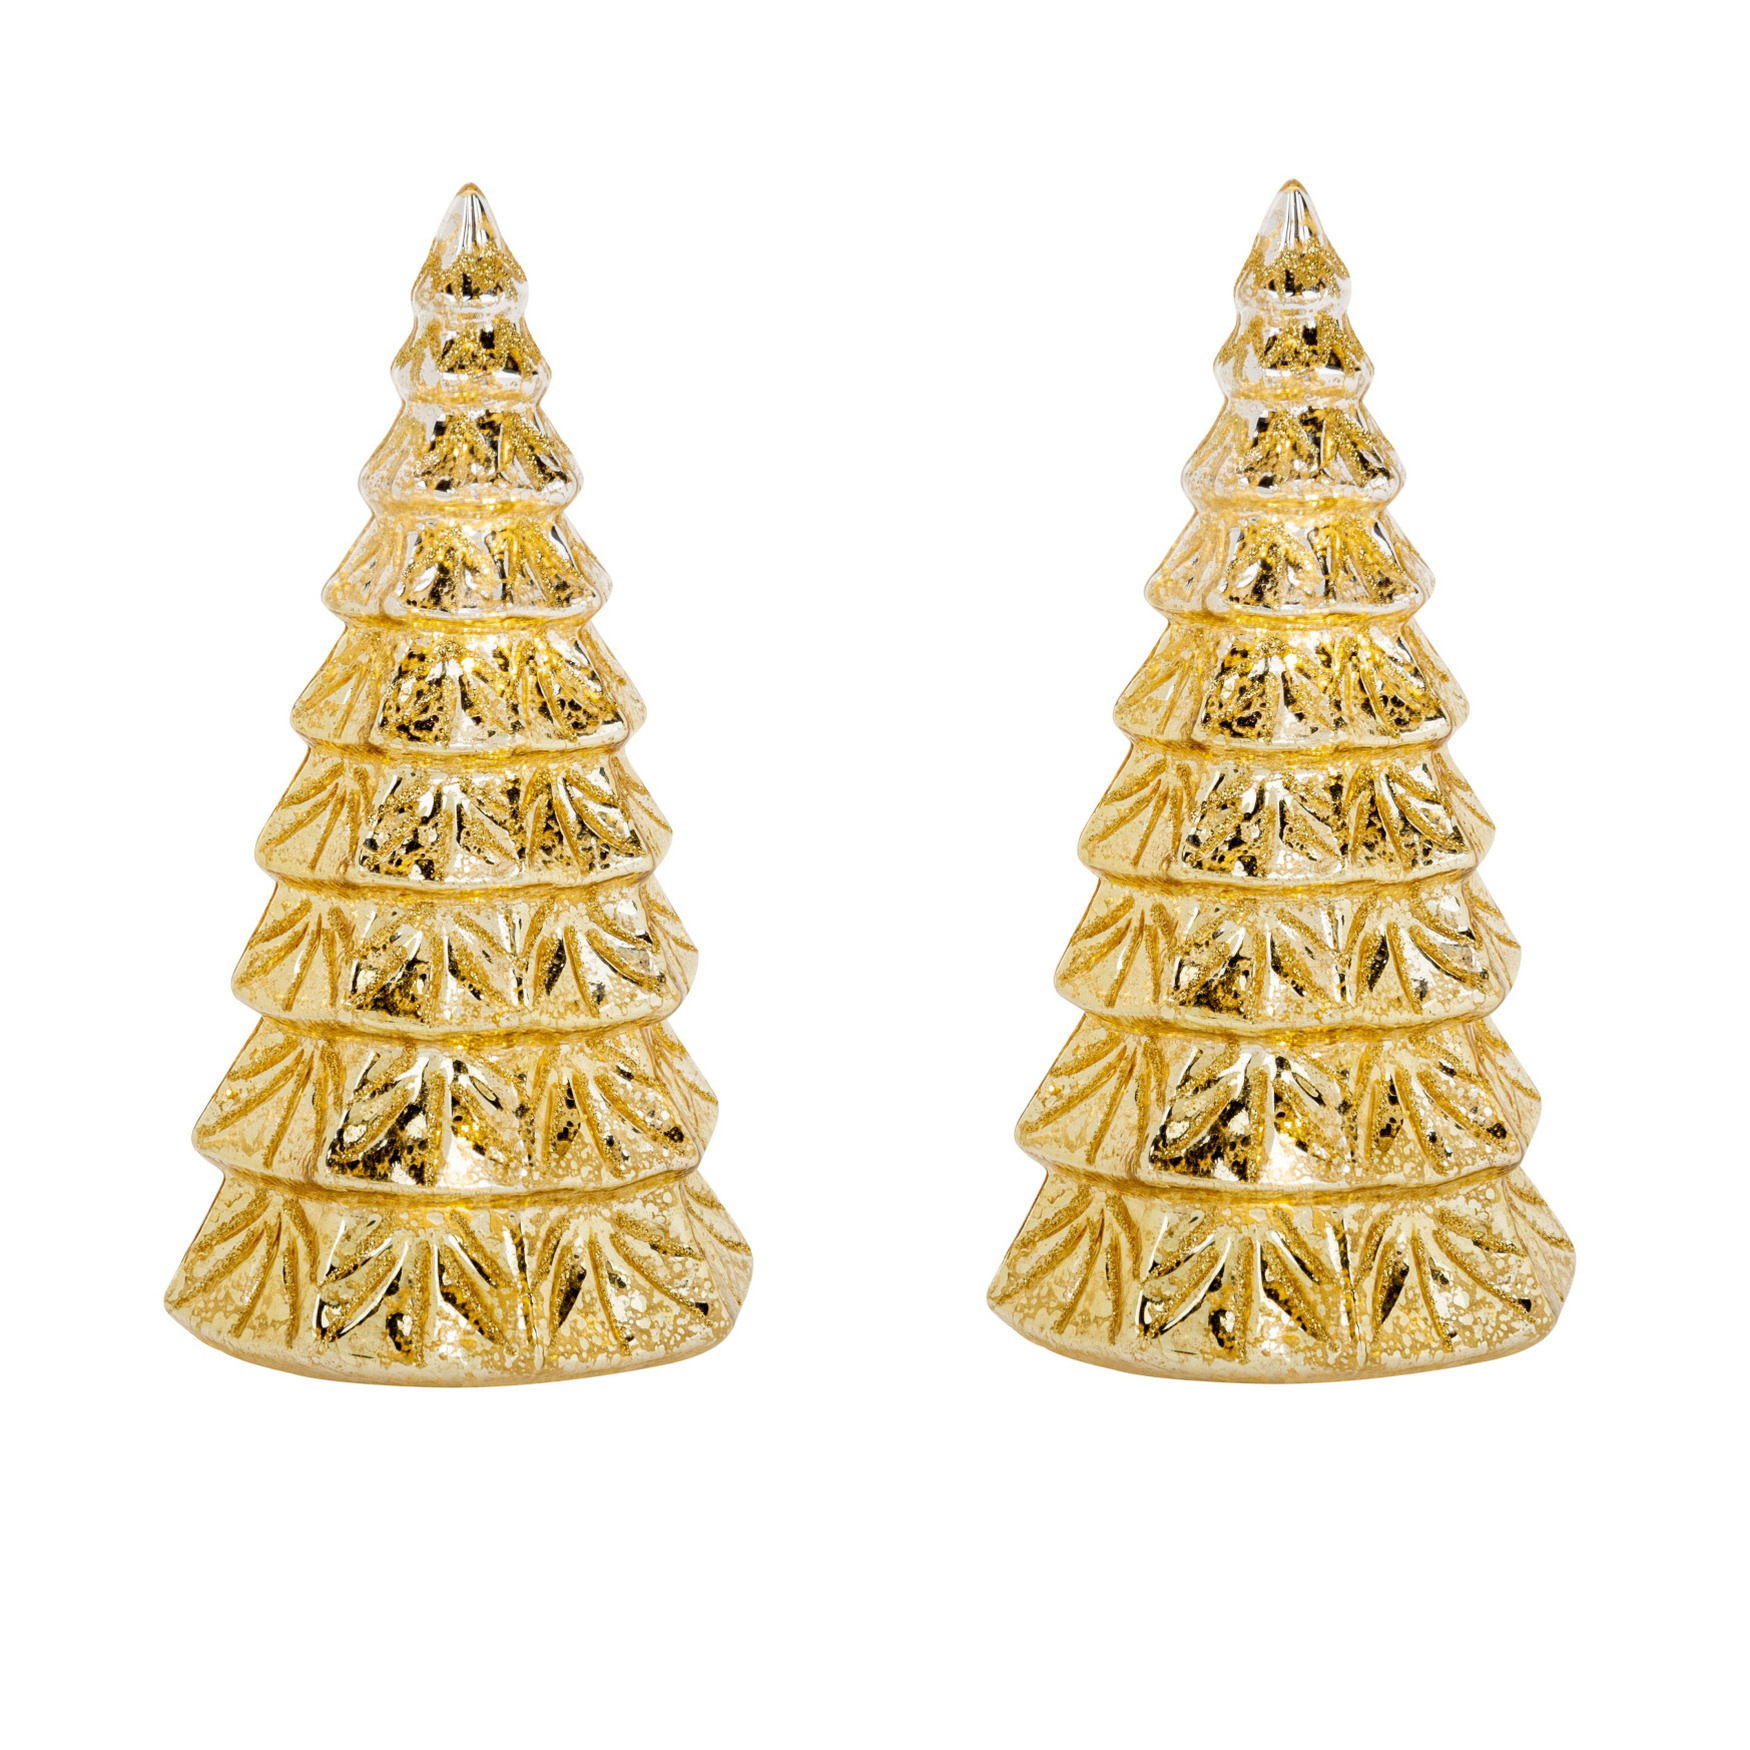 2x stuks led kaarsen kerstboom kaars goud D9 x H15 cm